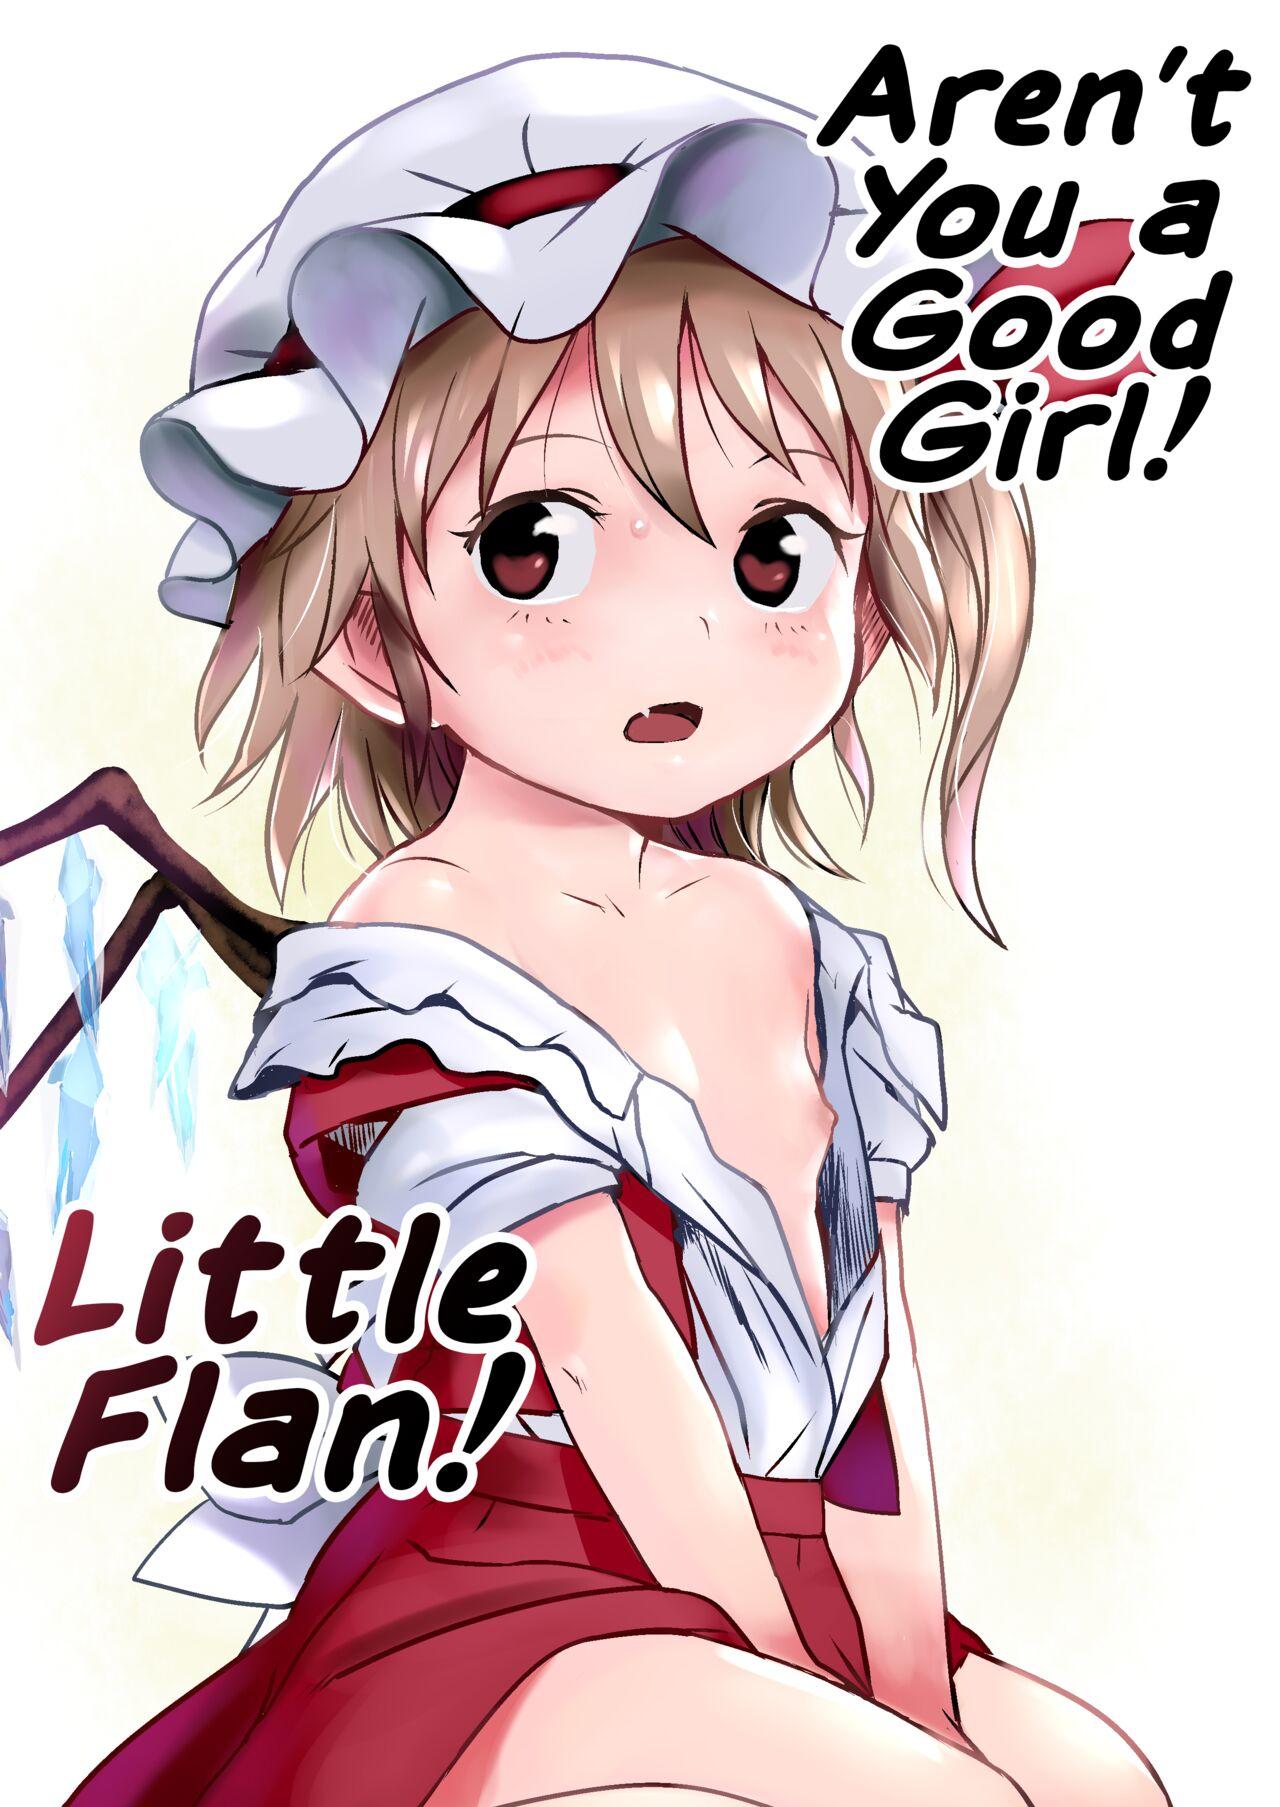 IIkodane~tsu! Flan-chan! | Aren't You a Good Girl! Little Flan! 0